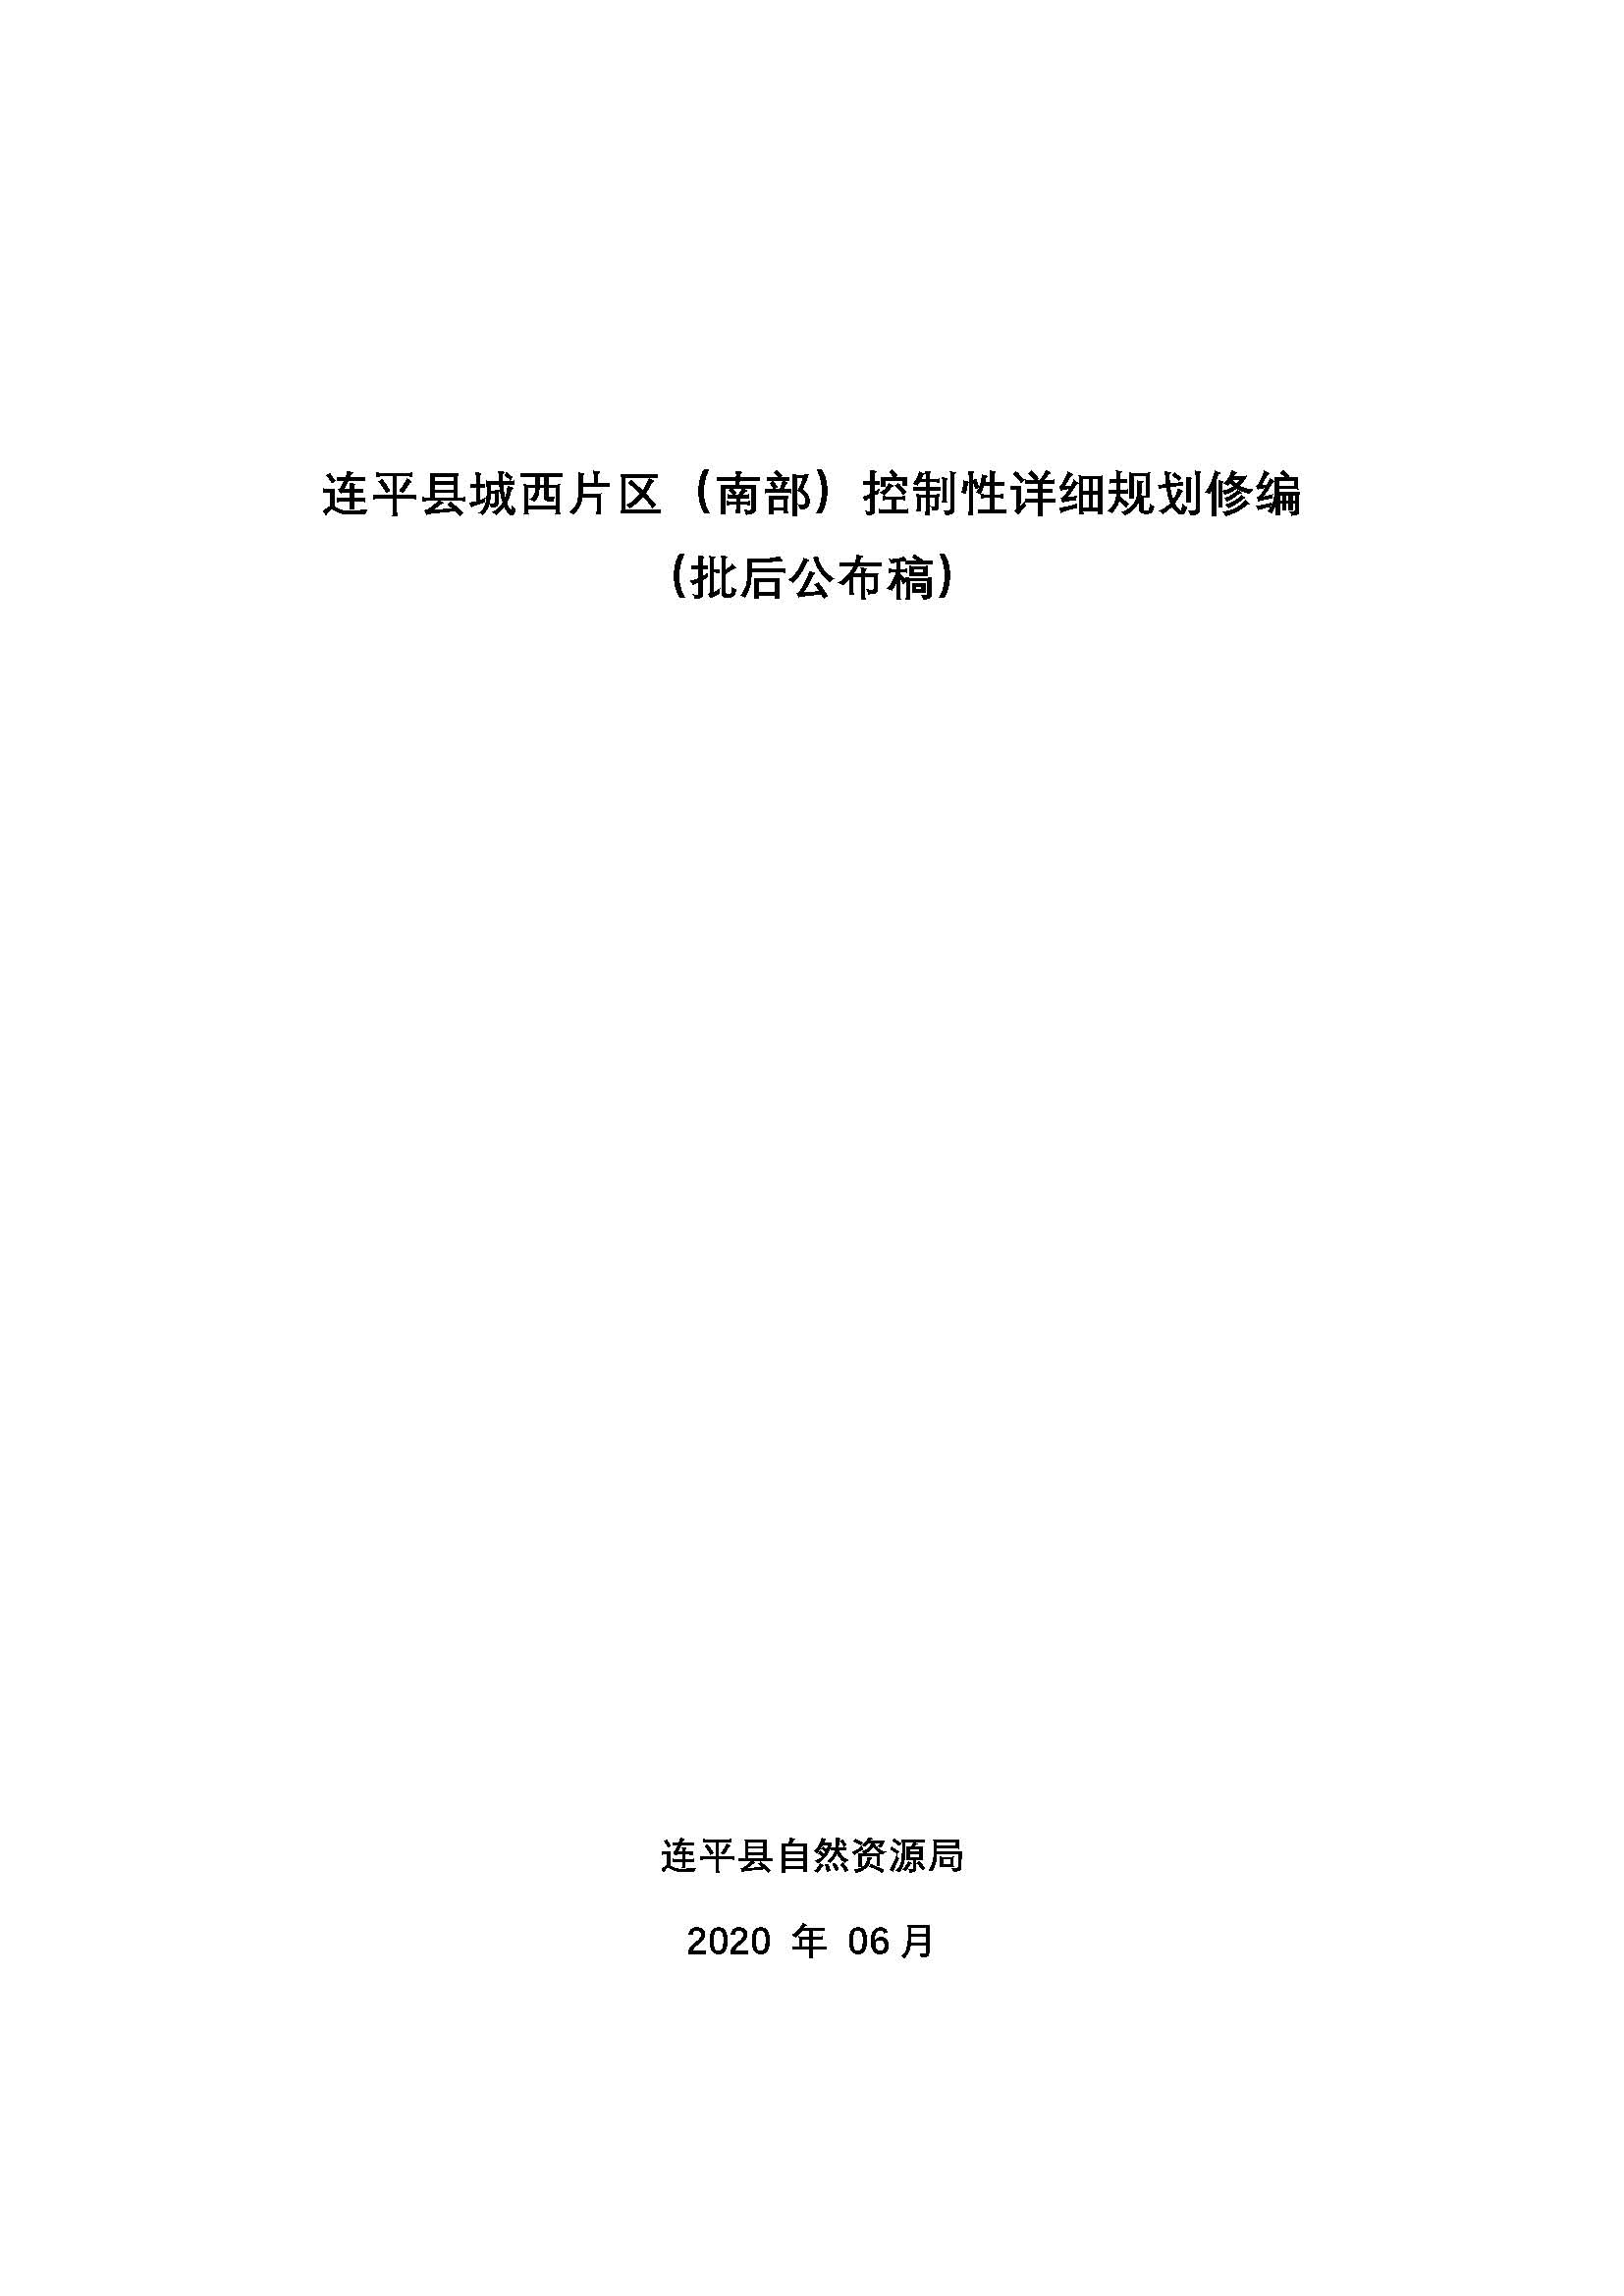 连平县城西片区（南部）控制性详细规划批后公告_页面_01.jpg